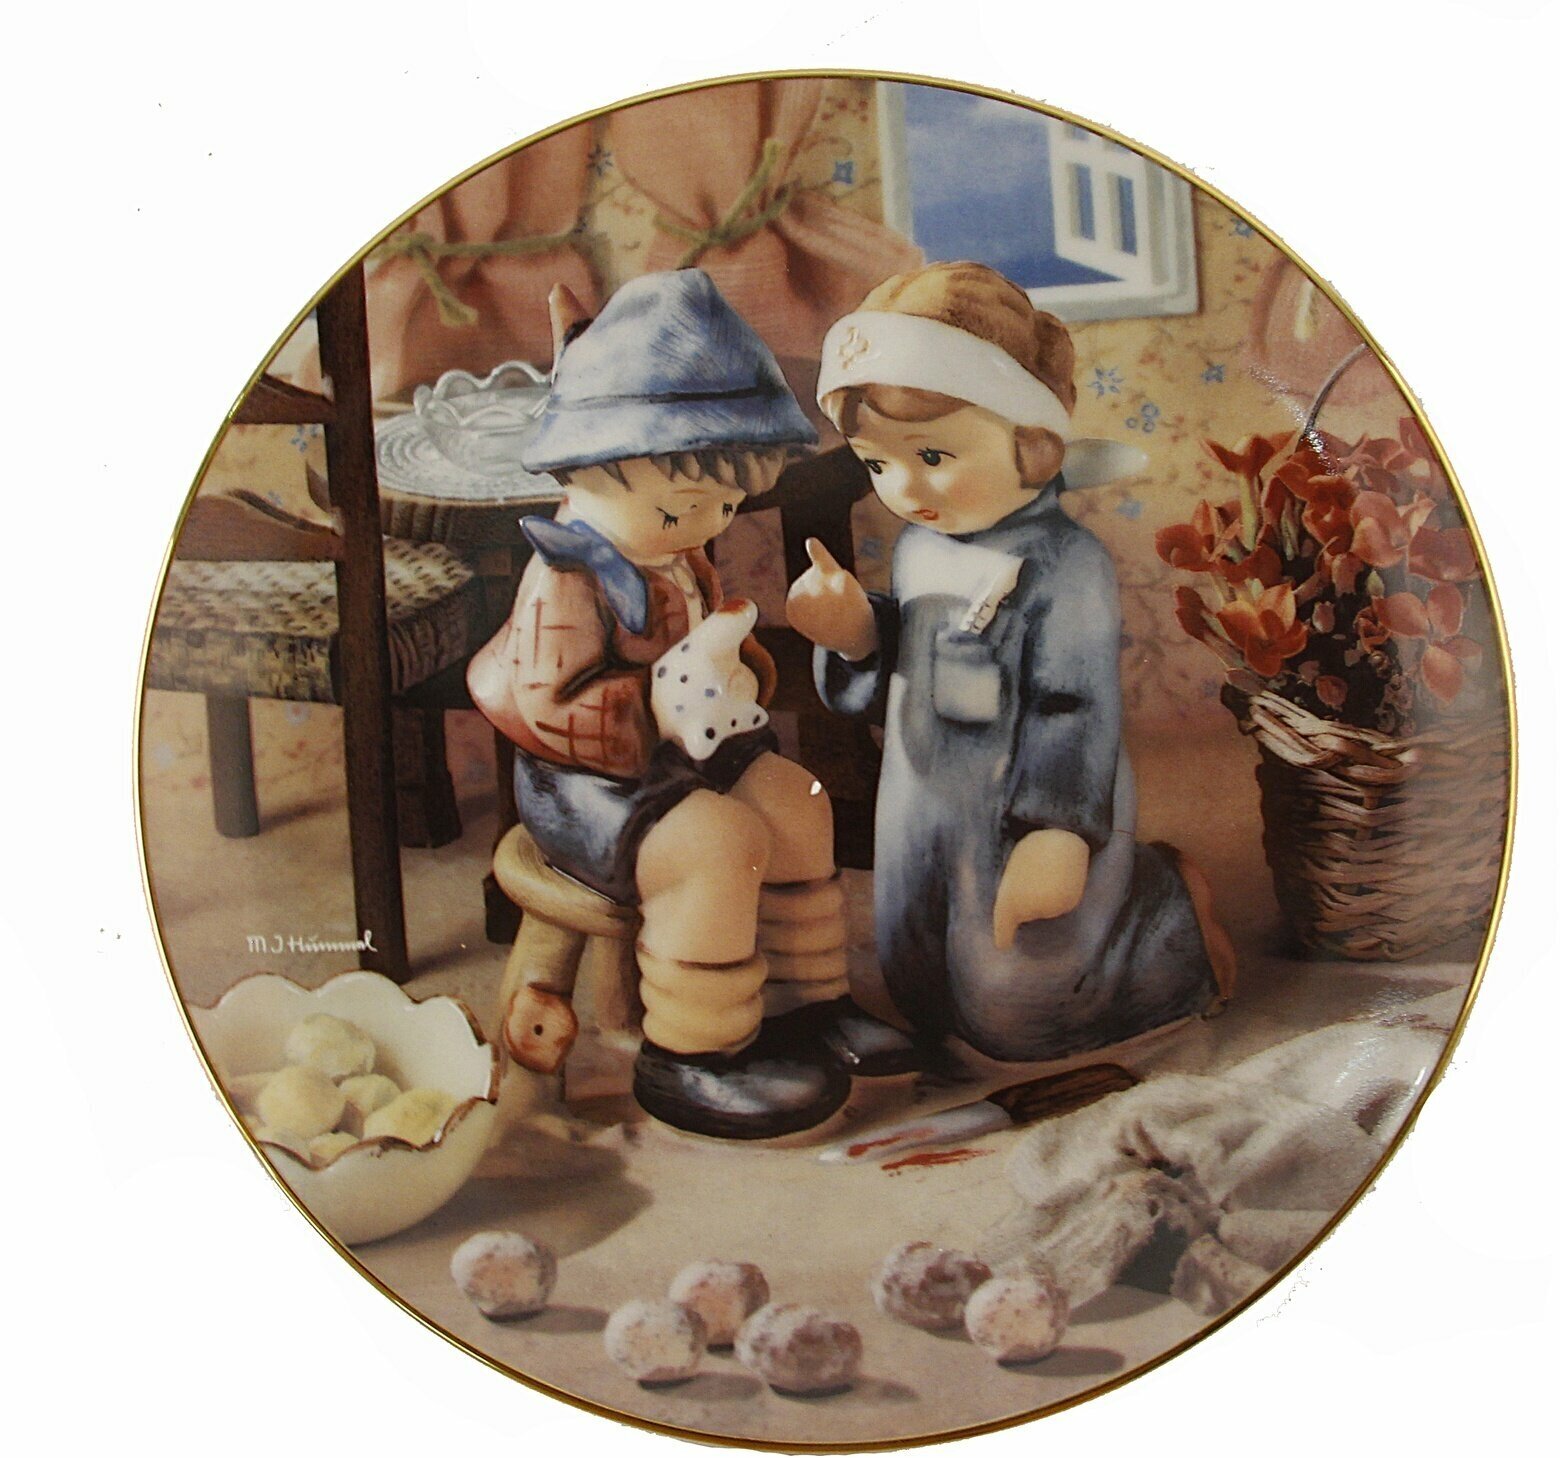 Декоративная тарелка Hummel "Любовь и забота" из серии "Маленькие компаньоны". Фарфор, роспись, деколь. Швейцария, 1992год